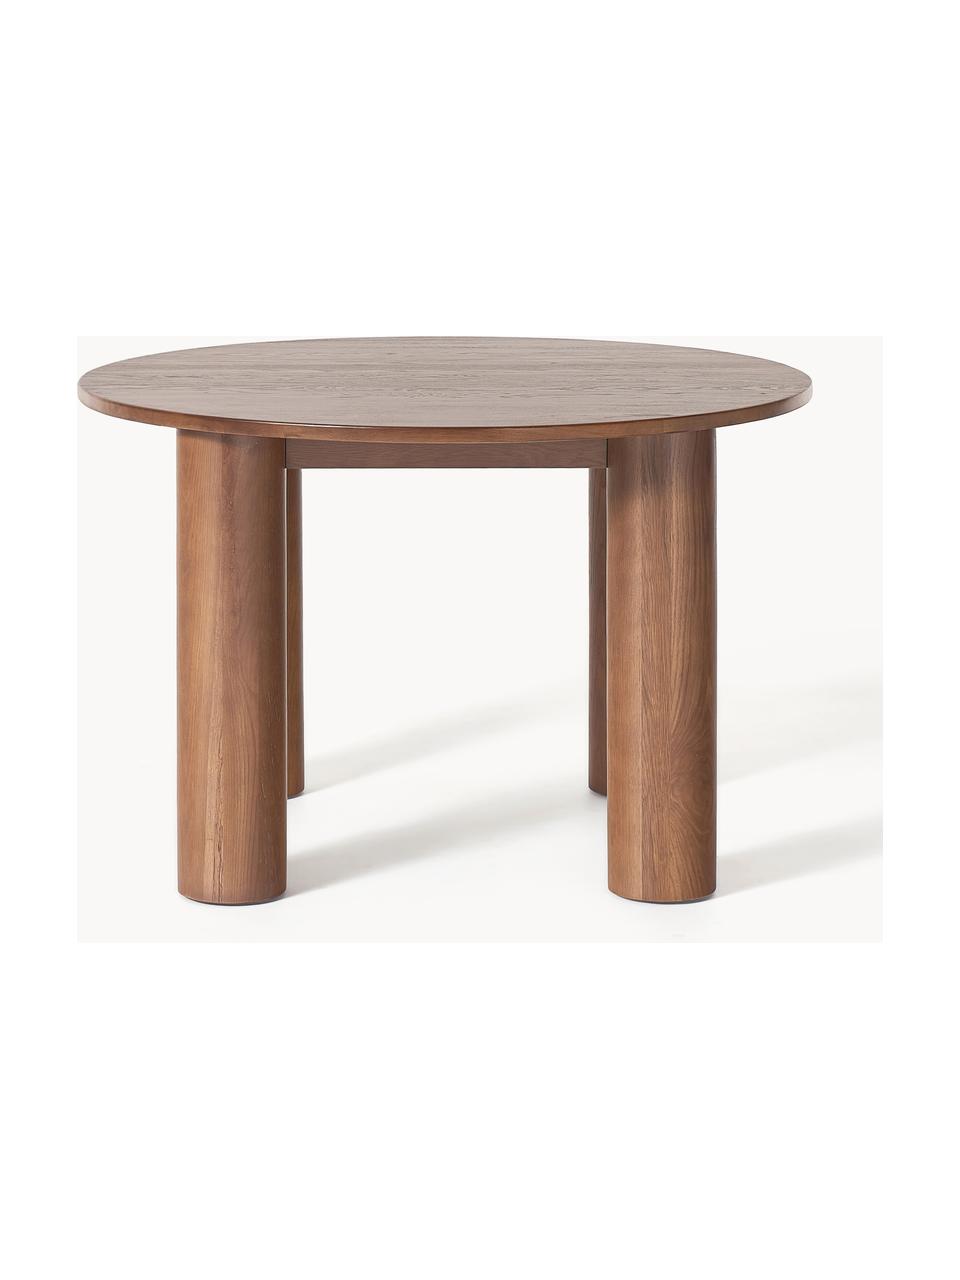 Table ronde en chêne Ohana, Ø 120 cm, Bois de chêne huilé

Ce produit est fabriqué à partir de bois certifié FSC® issu d'une exploitation durable, Chêne brun huilé, Ø 120 cm